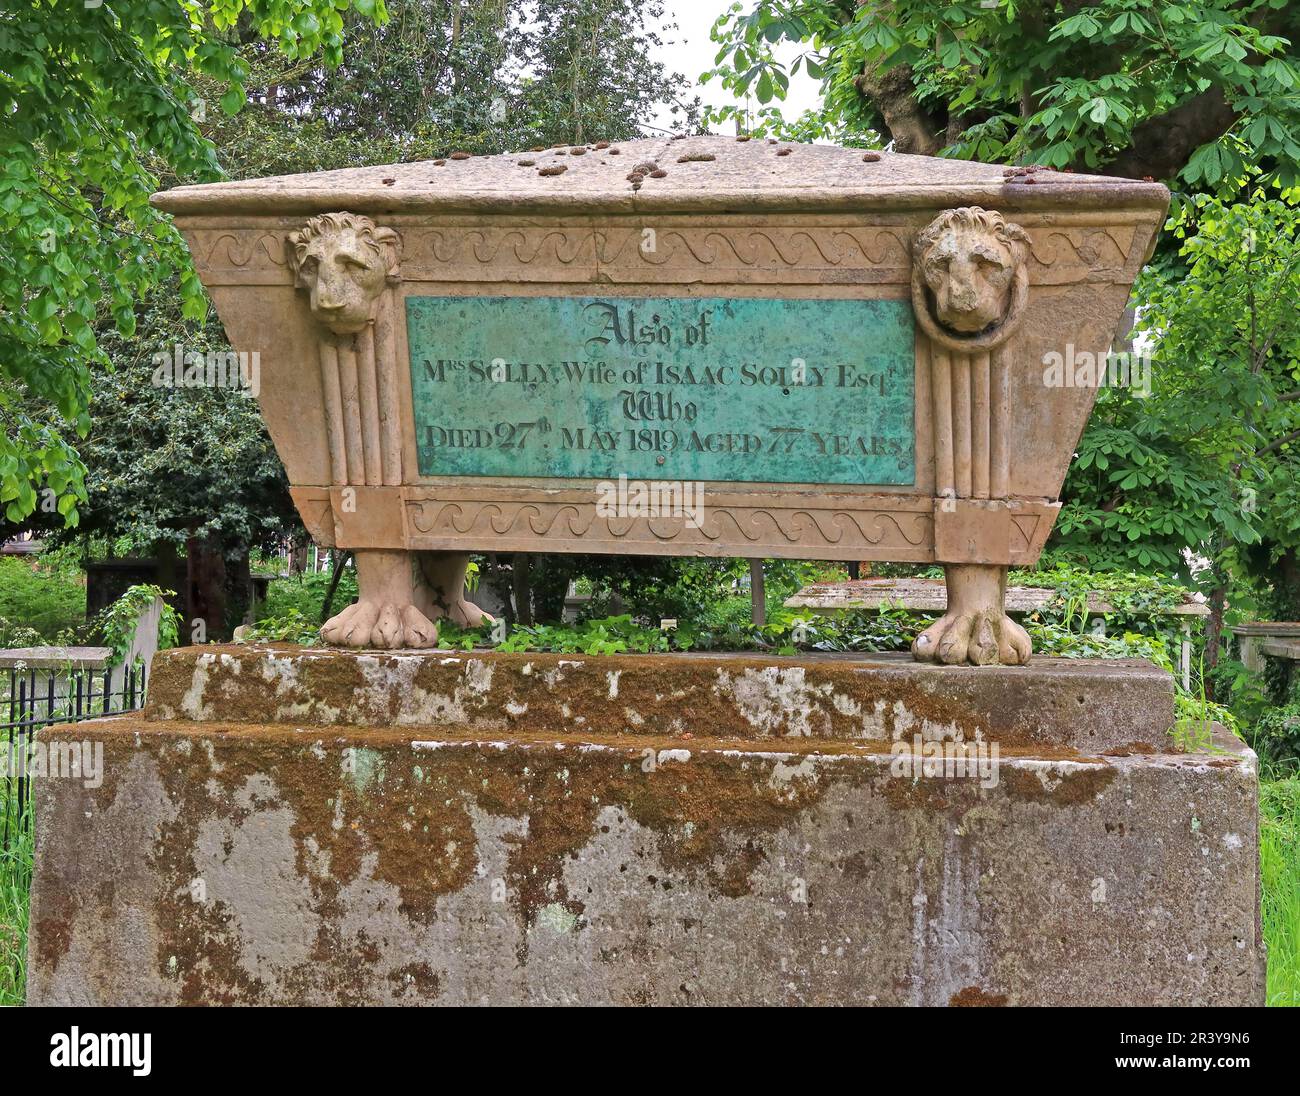 Cimetière de l'église St Marys, Isaac Solly, tombe de cercueil en pierre, 27-05-1819, avec des lions tristes Banque D'Images